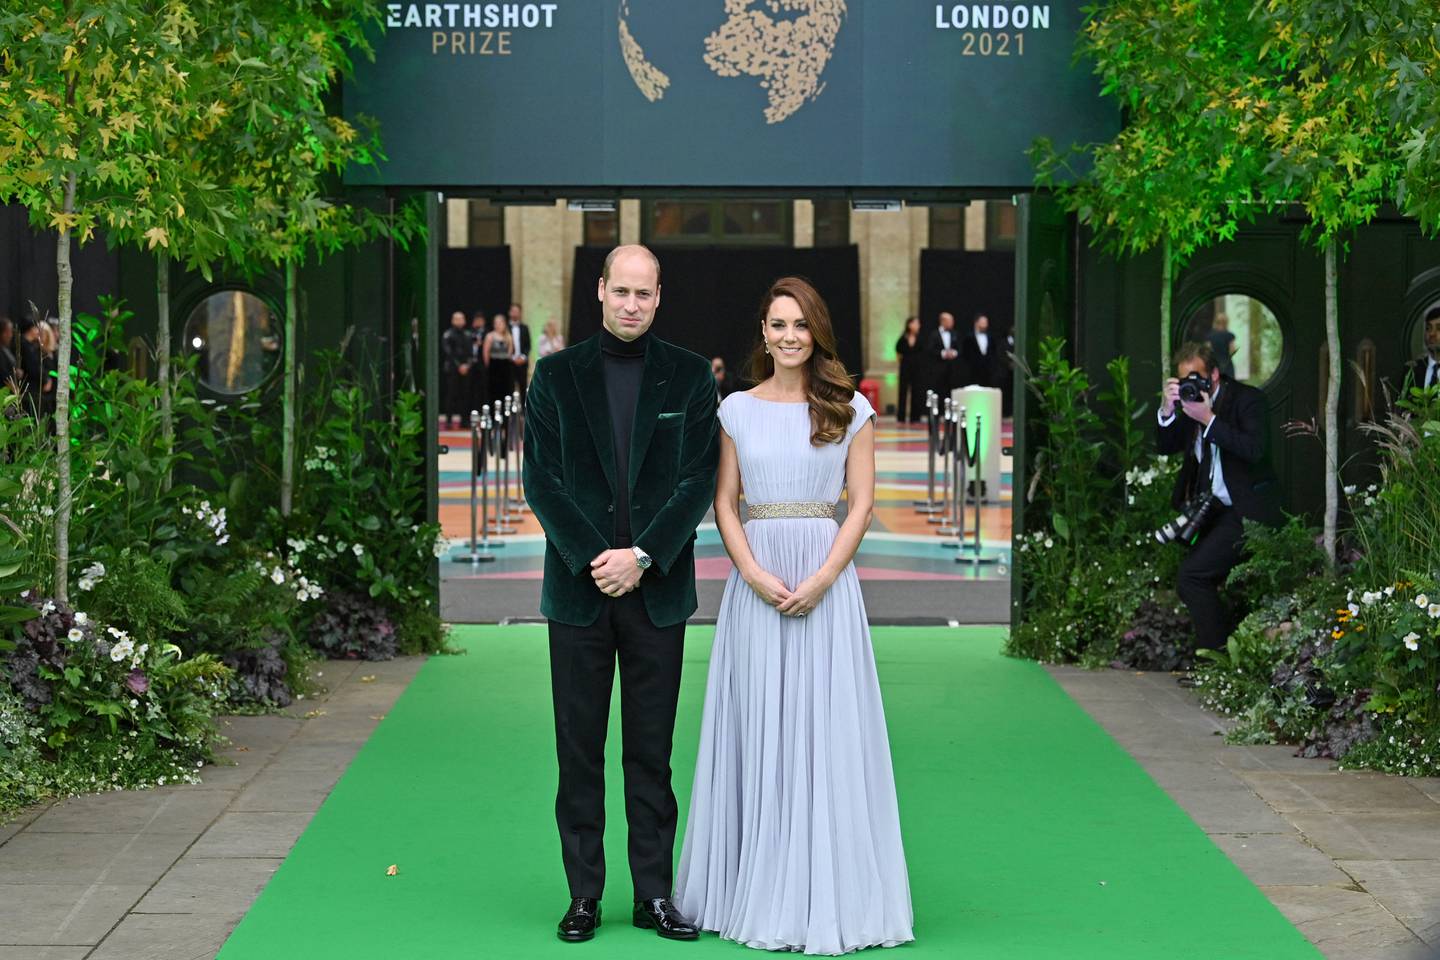 El duque y la duquesa de Cambridge en la ceremonia de premiación del galardón Earthshot. Foto: AFP